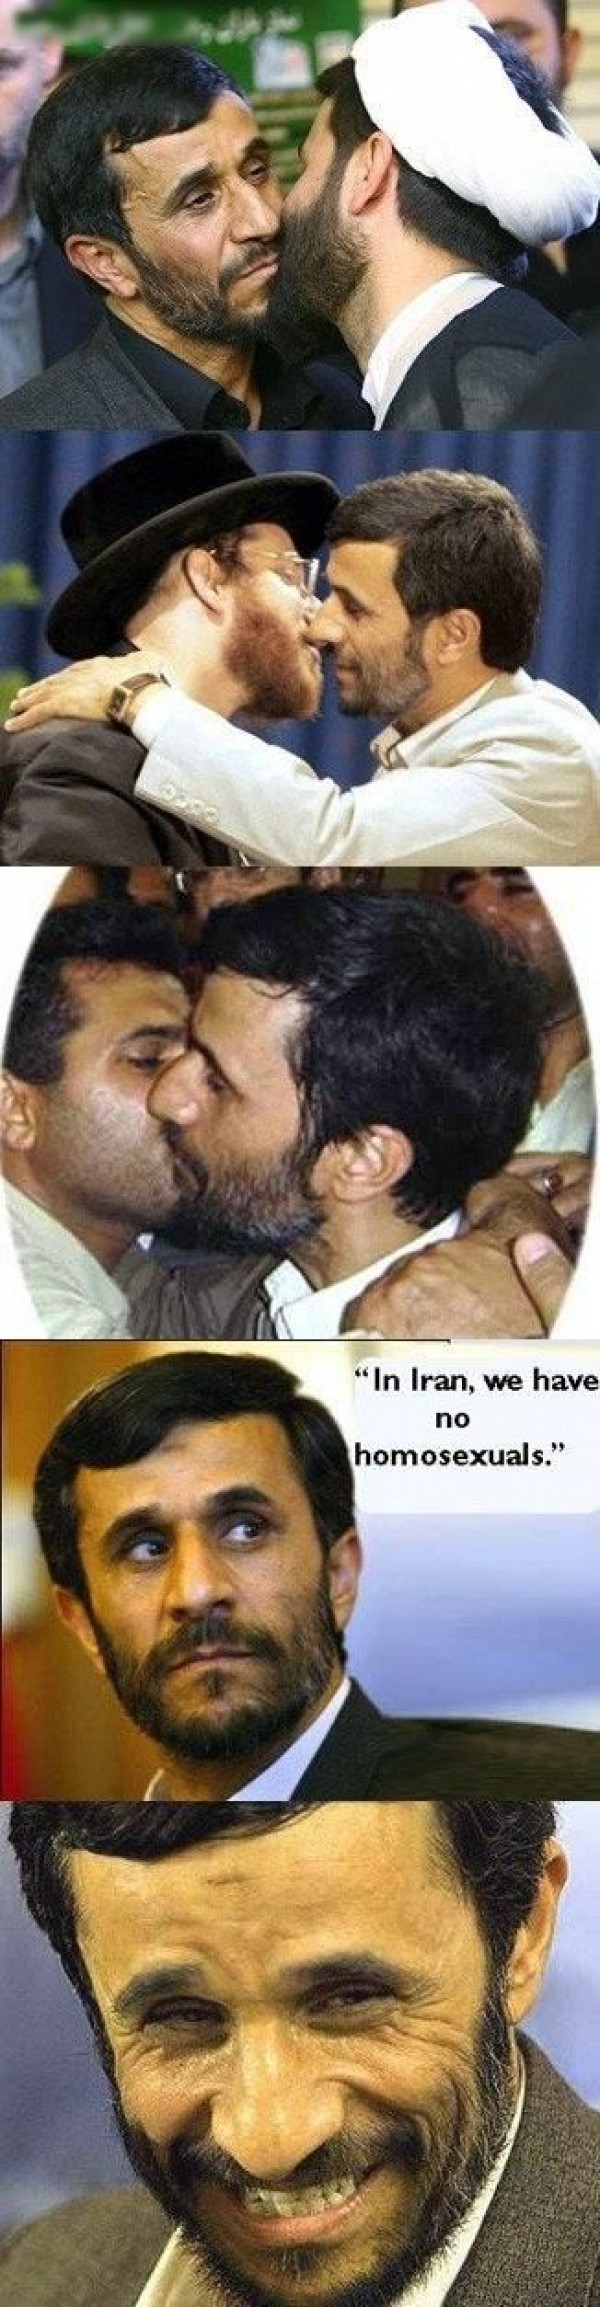 iran funny - "In Iran, we have no homosexuals."